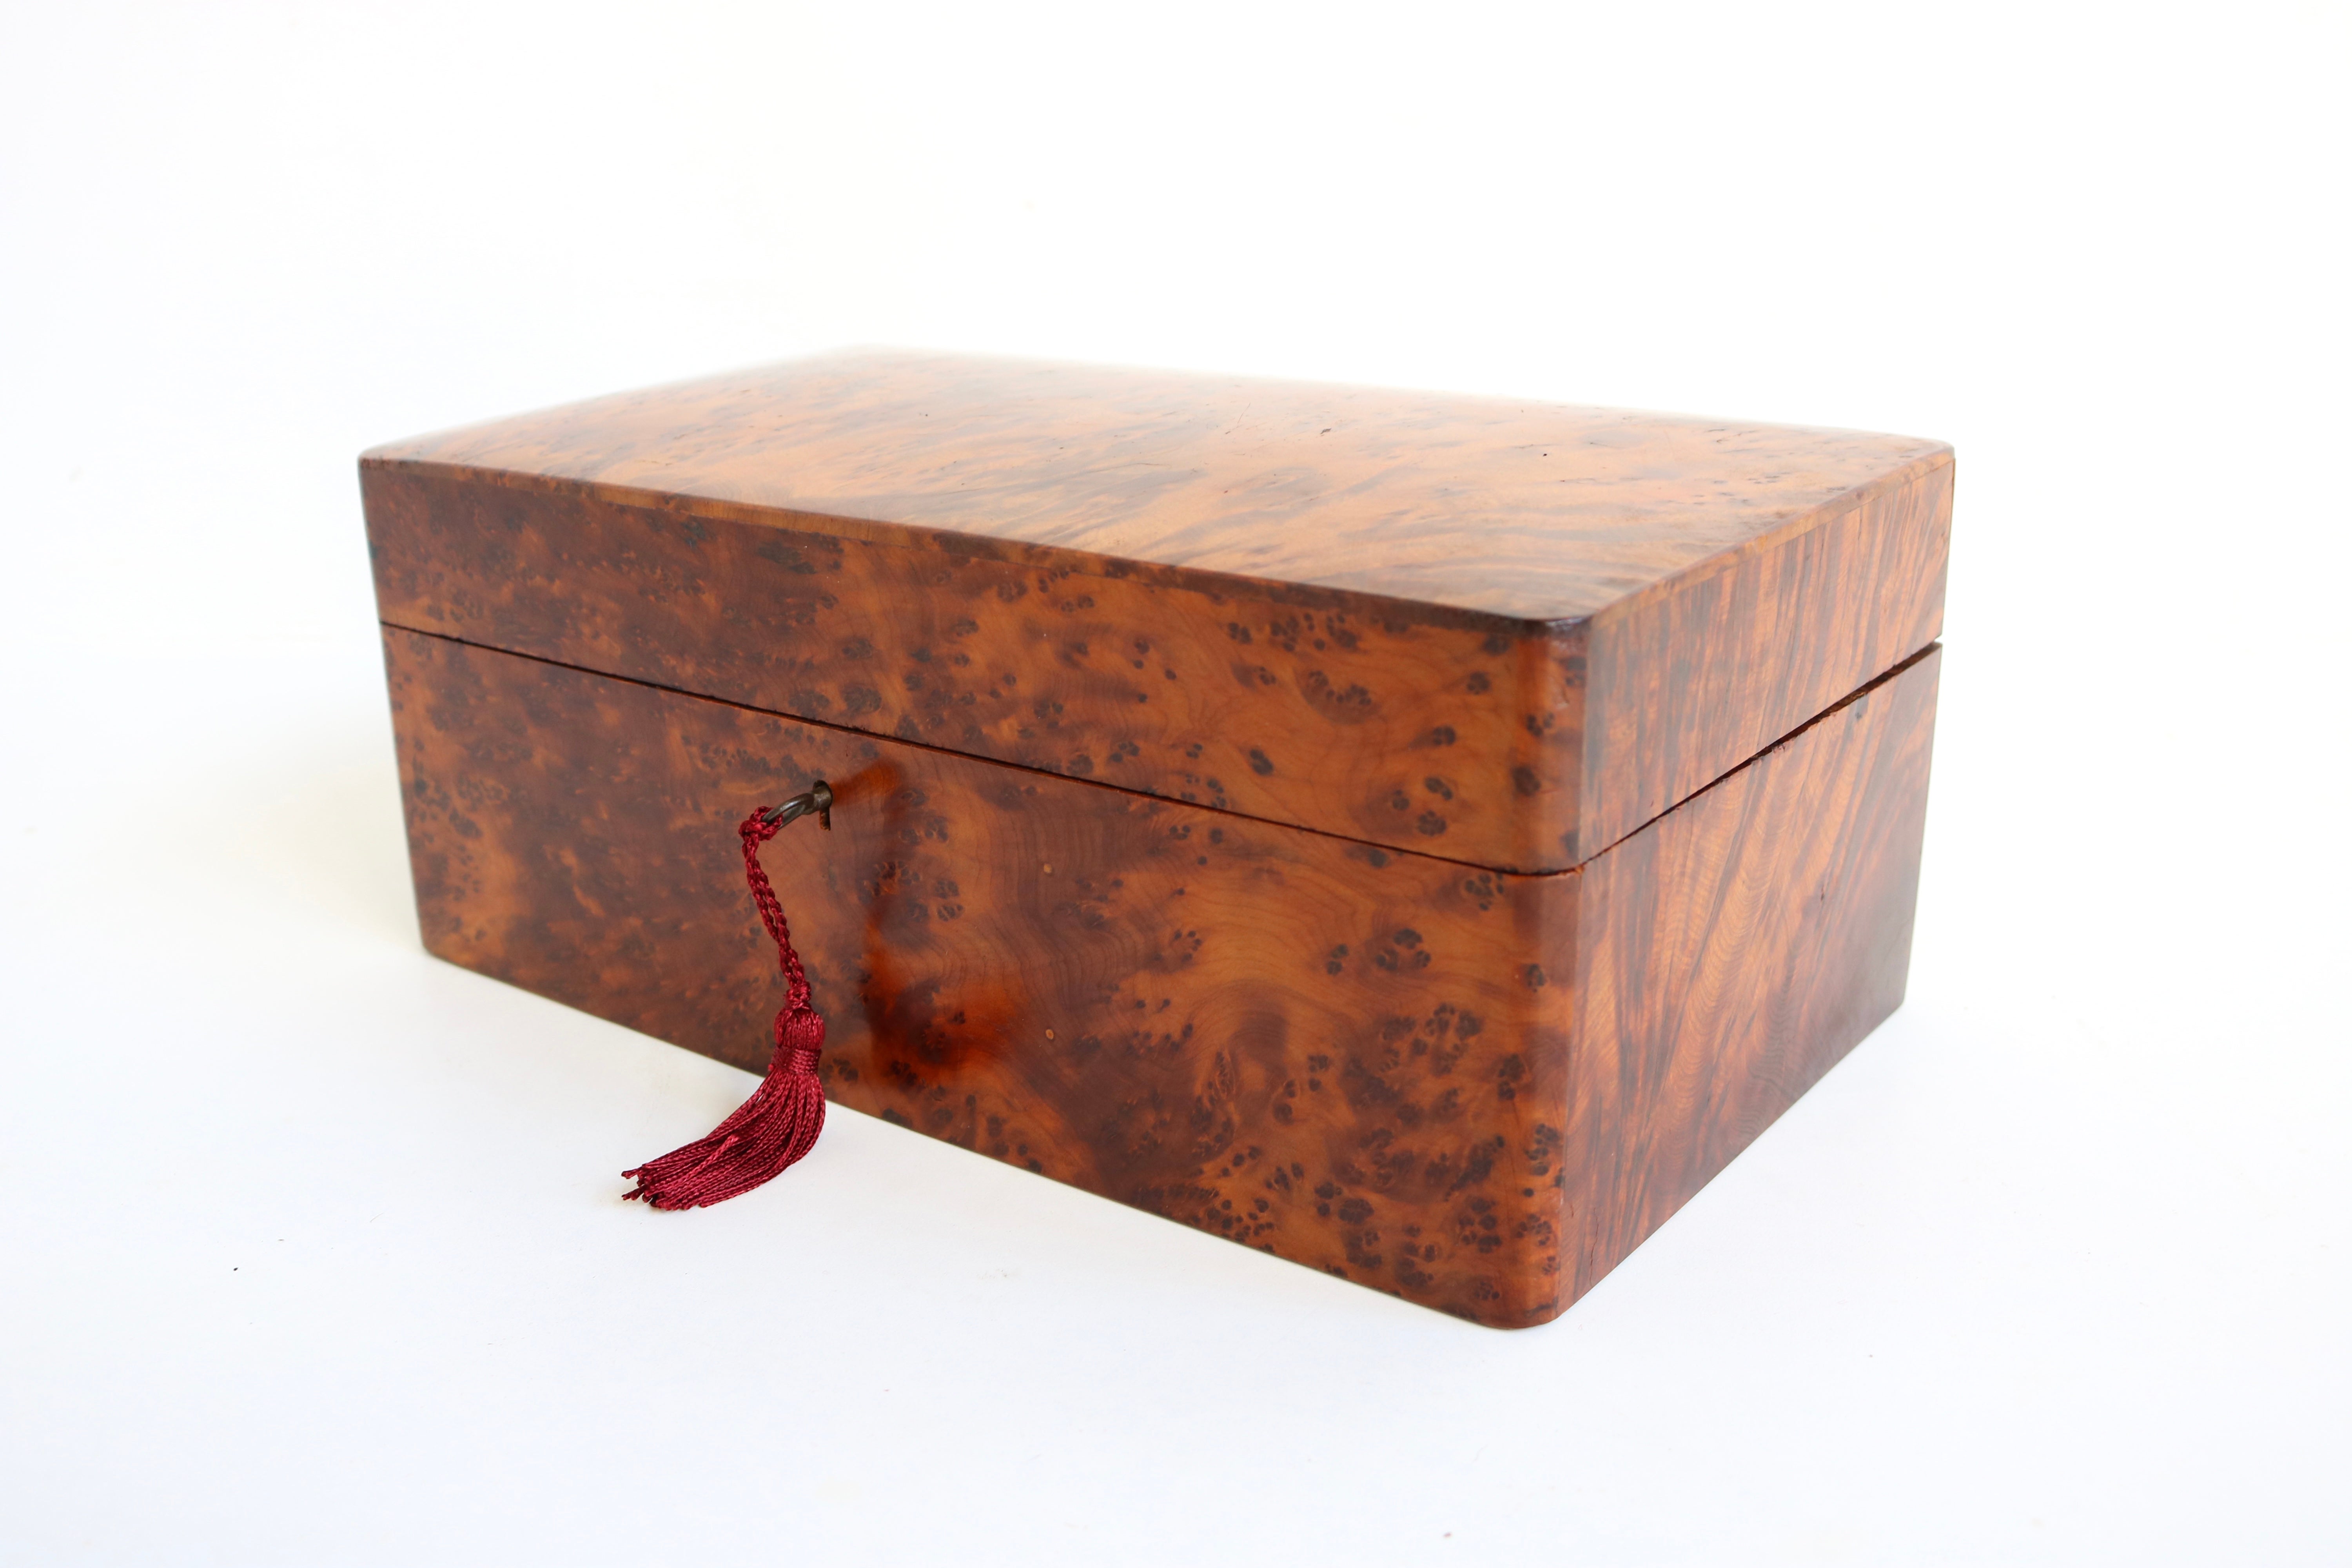 Merveilleuse boîte à bijoux Napoléon III 19ème siècle en bois de ronce de France. 
Grain de bois impressionnant avec un léger bord incurvé sur le dessus. 
Livré avec un intérieur complet et magnifique, très rare car souvent perdu. 
Réparation